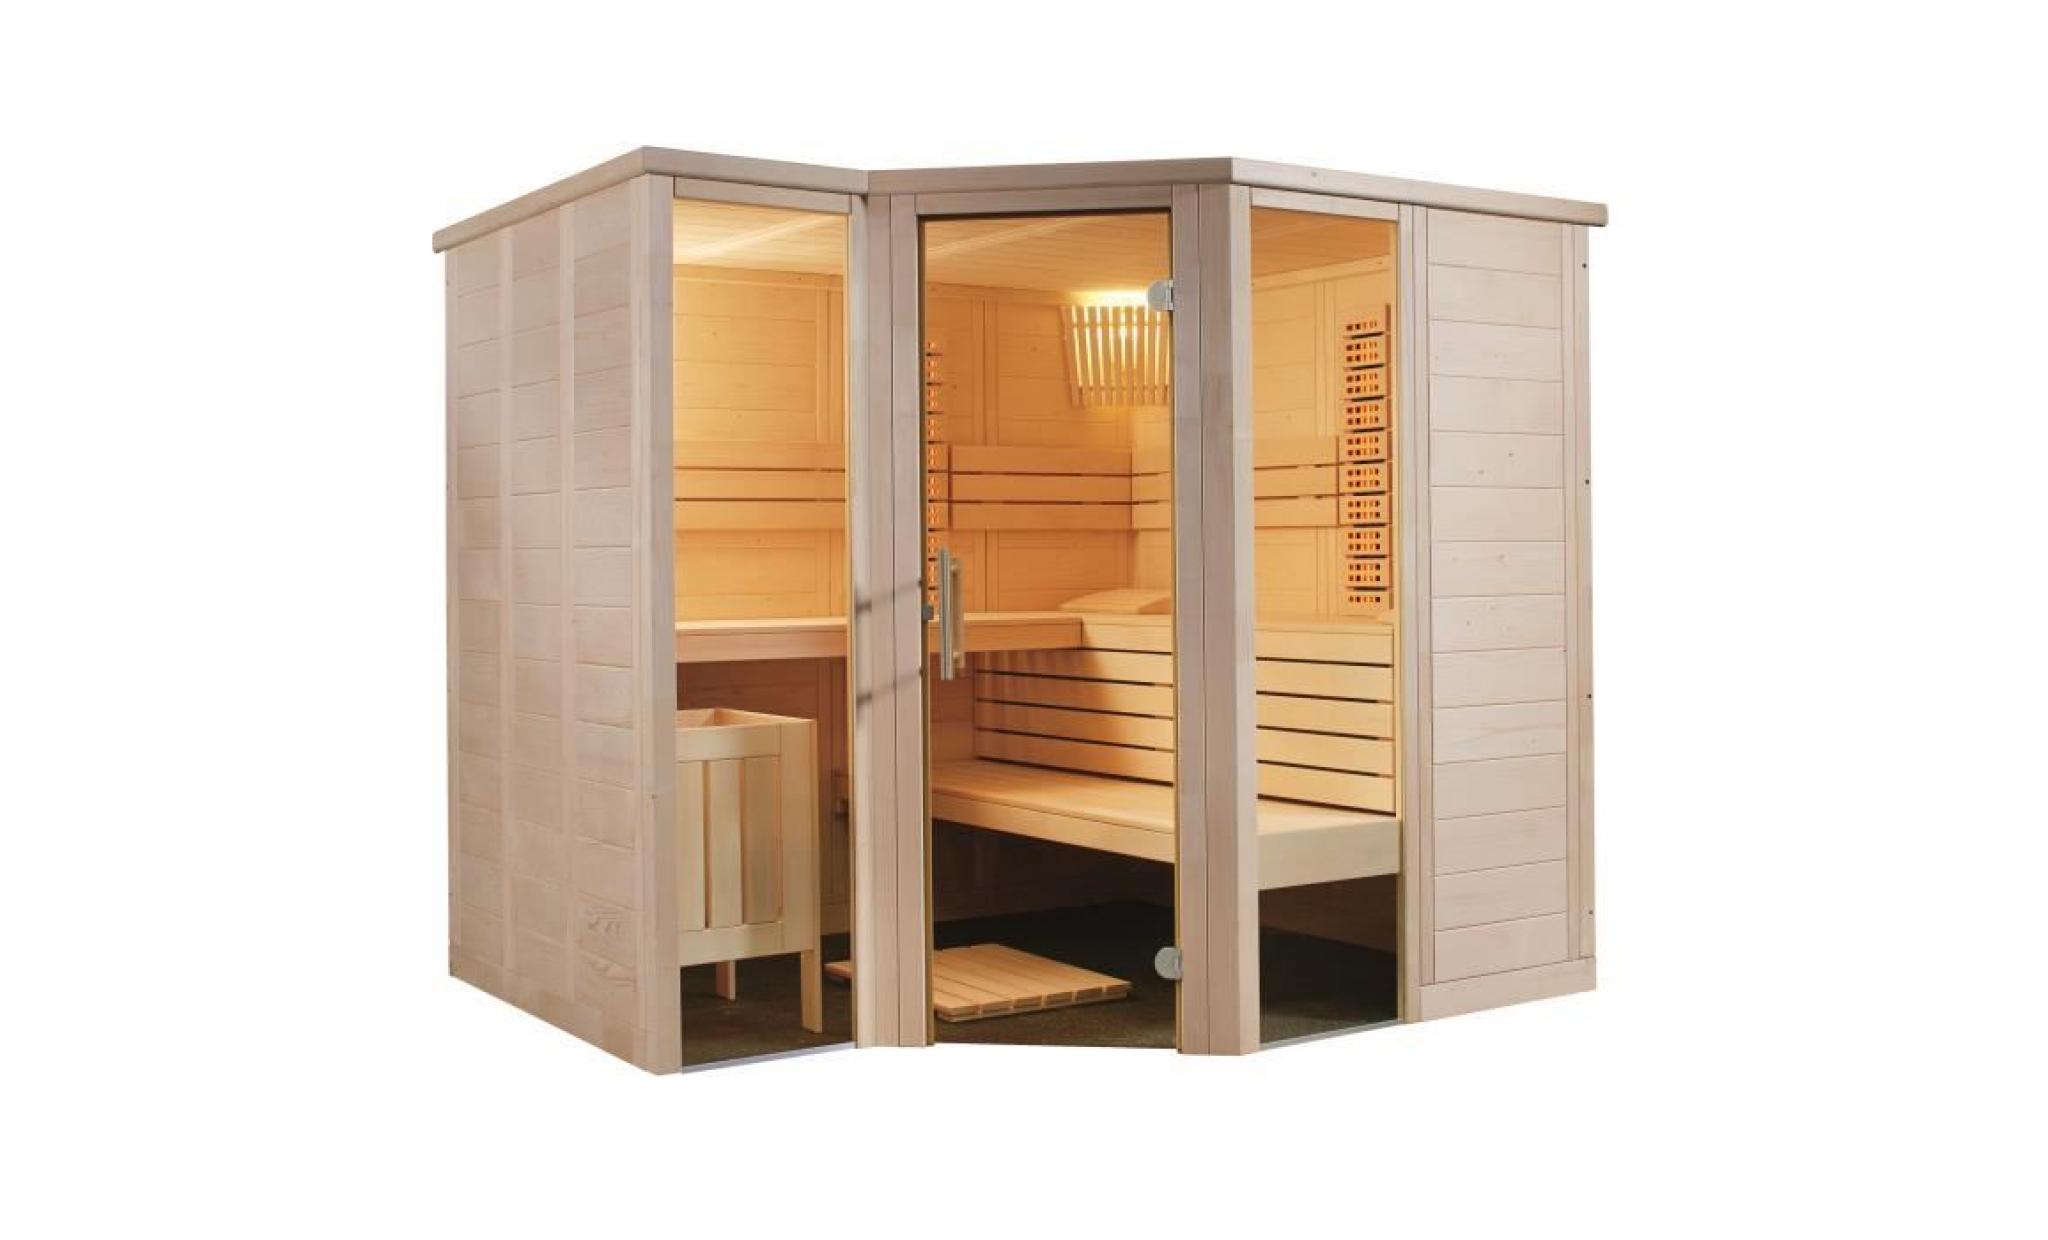 cabine de sauna à infrarouge arktis infra+ de sentiotec 234x206 cm